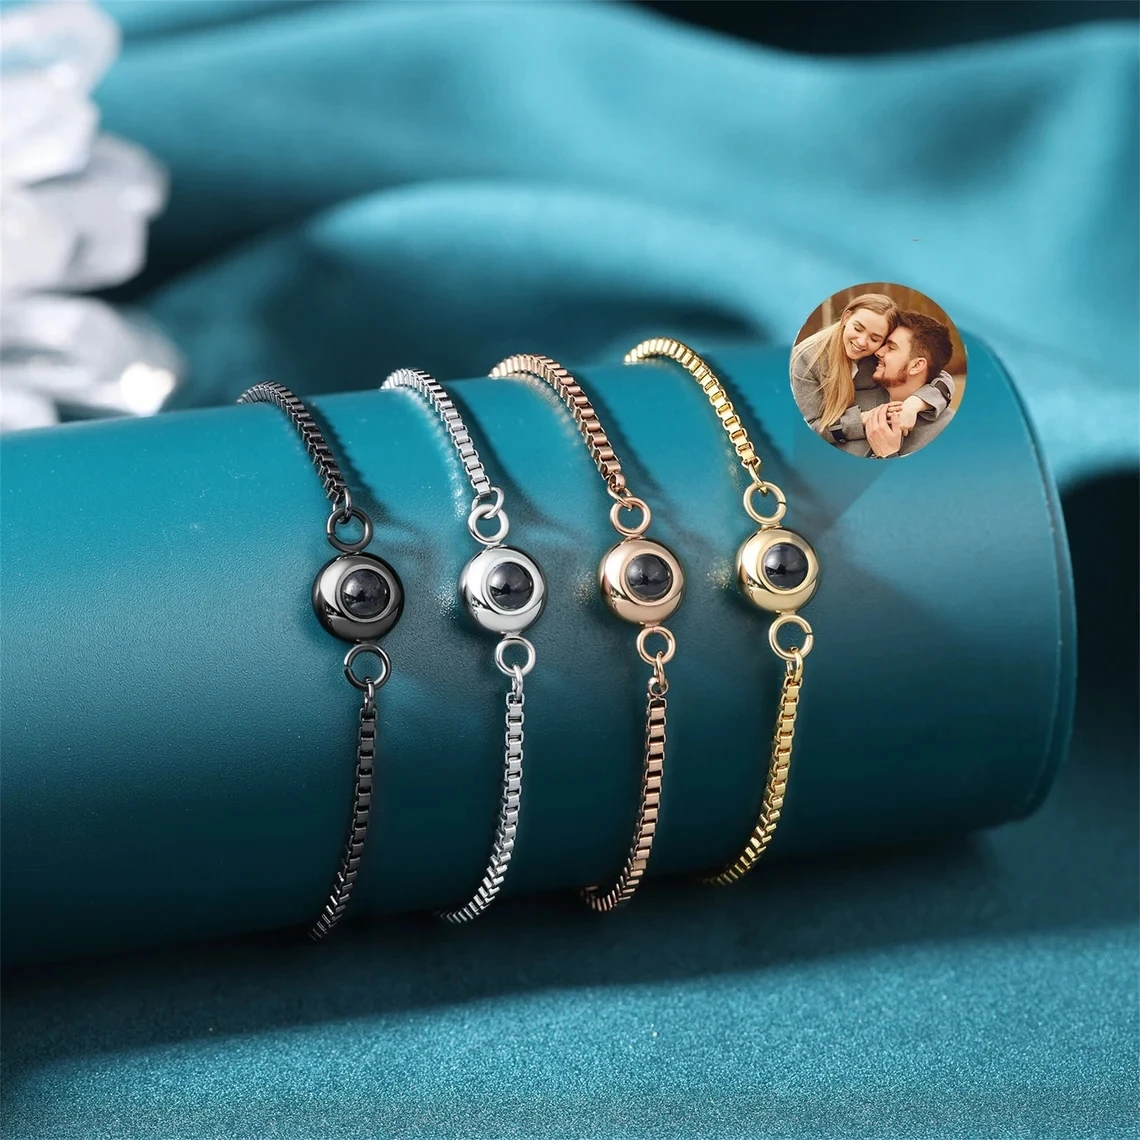 Personalized Projection Bracelet For Women Customized Picture Projection Bracelets Photo Stainless Steel Bracelet Jewelry Gifts